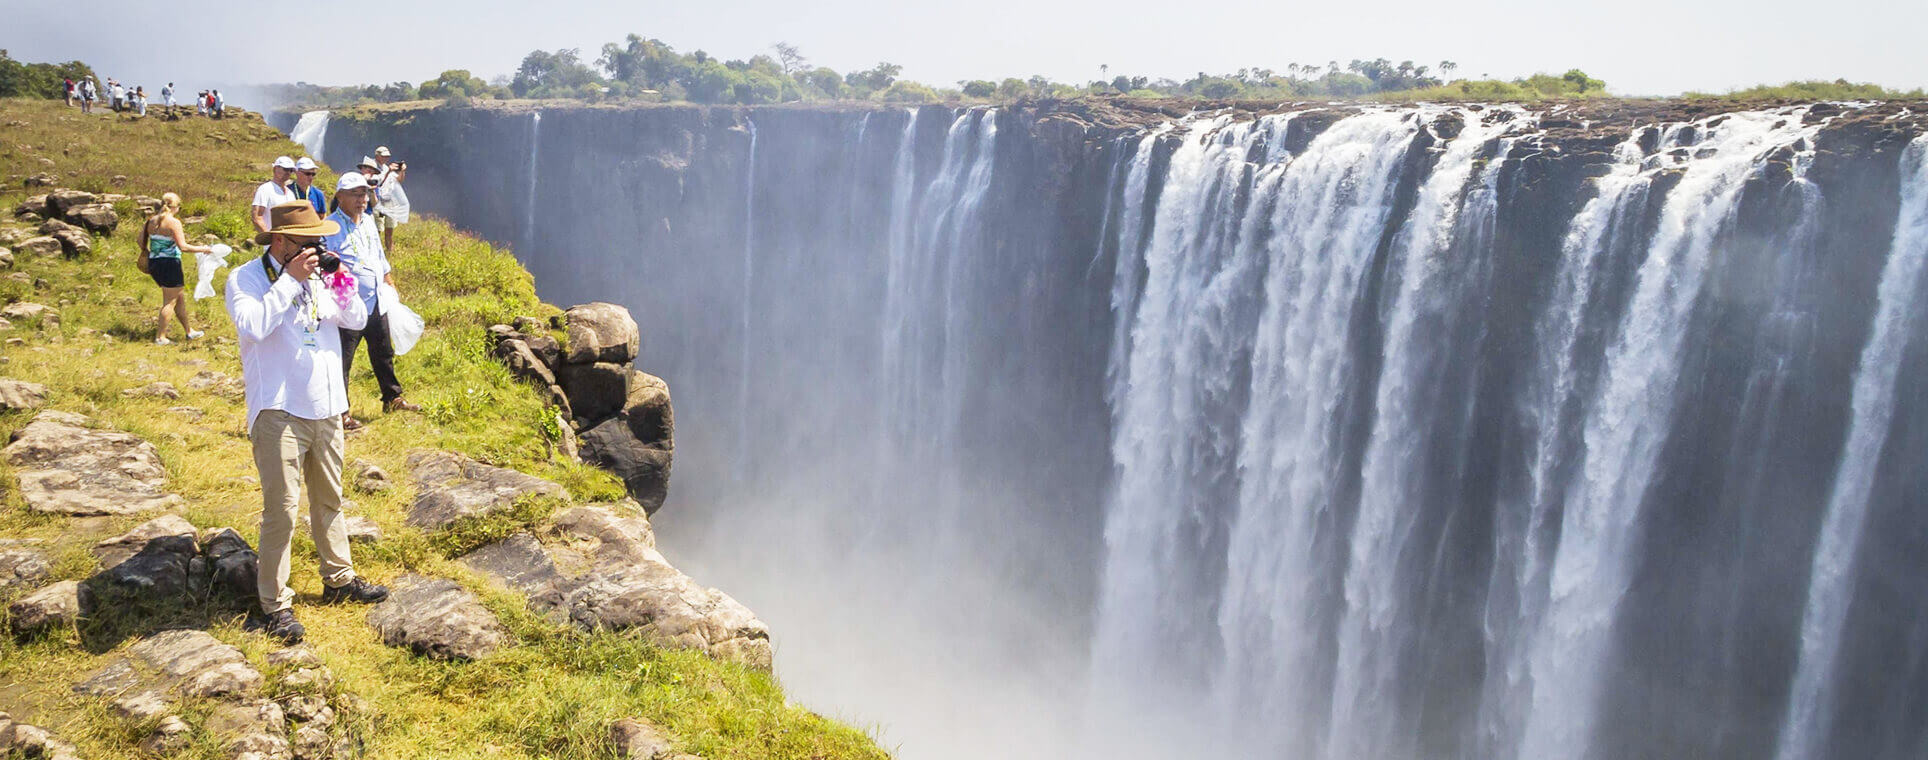 Astonishing Zimbabwe Tour